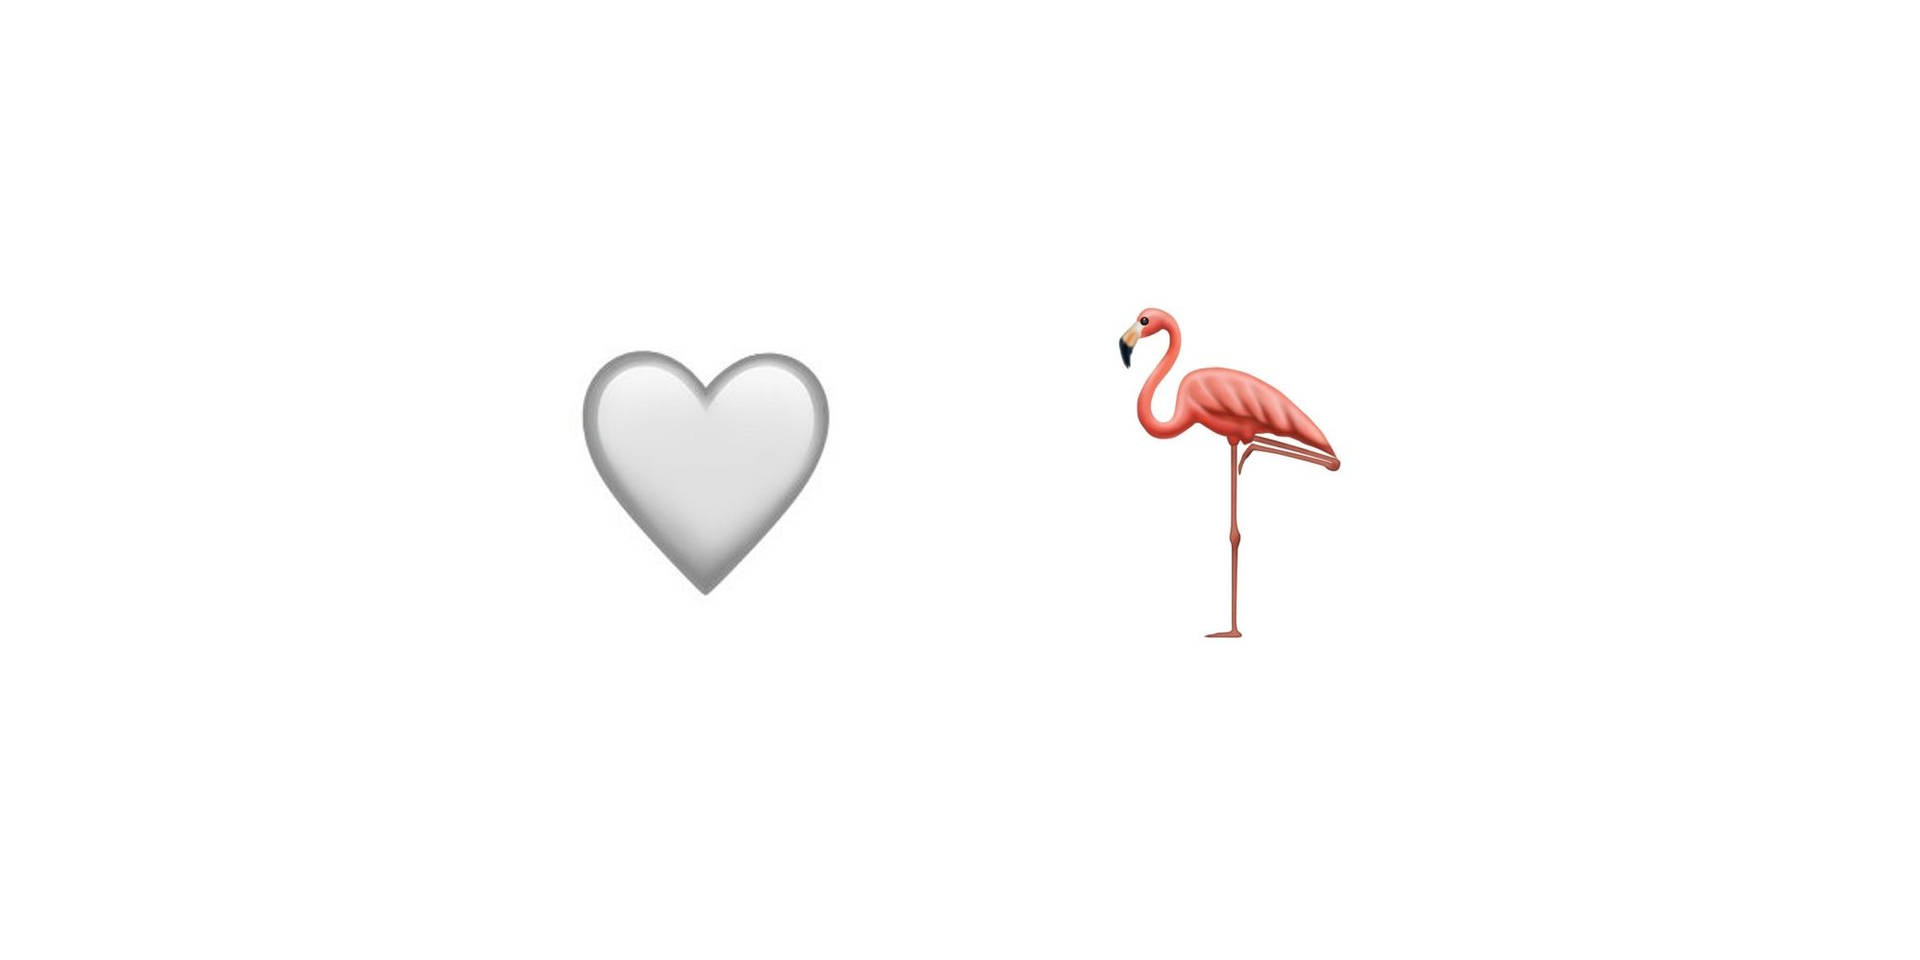 Coraçãobranco E Flamingo Rosa. Papel de Parede